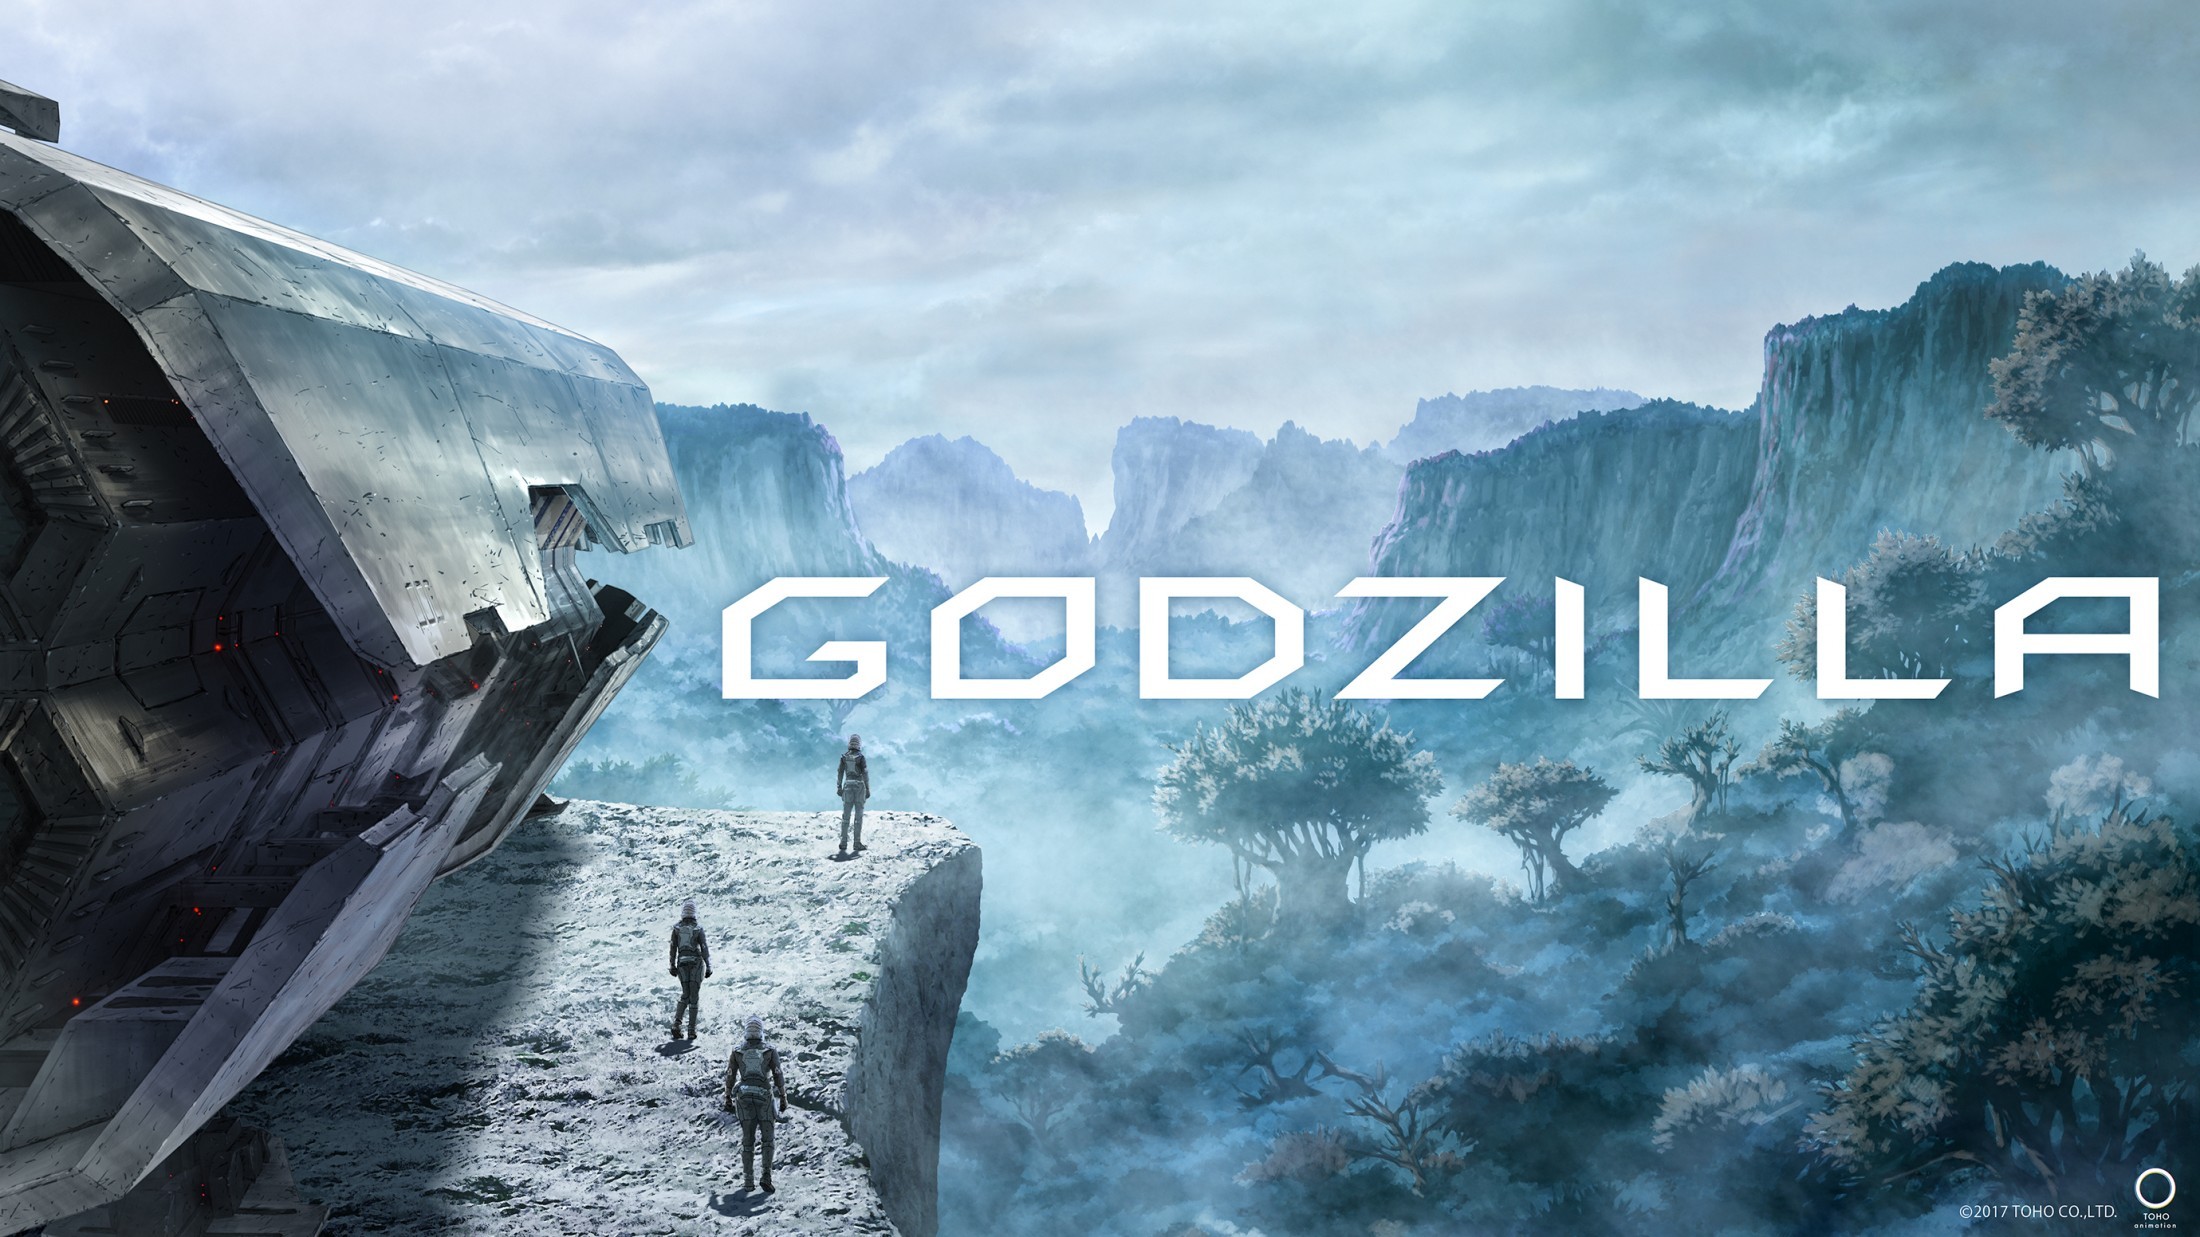 Amazing Godzilla (2017) Pictures & Backgrounds